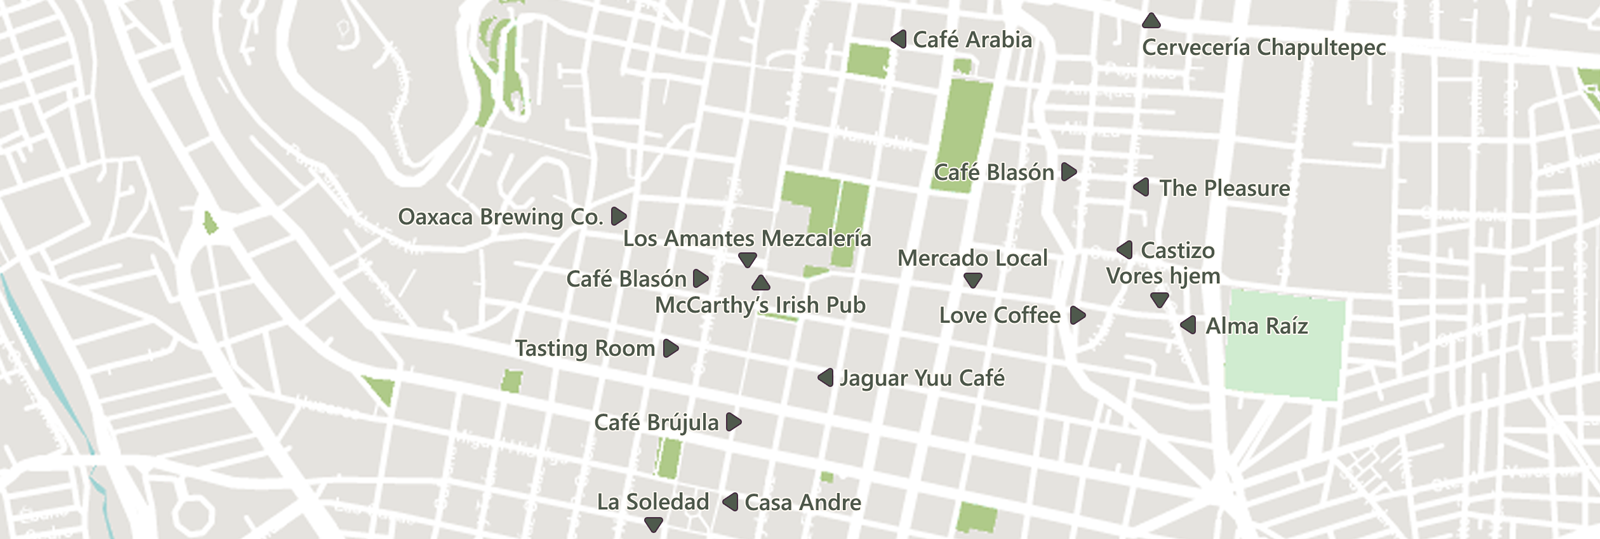 Cafeerne i Oaxaca